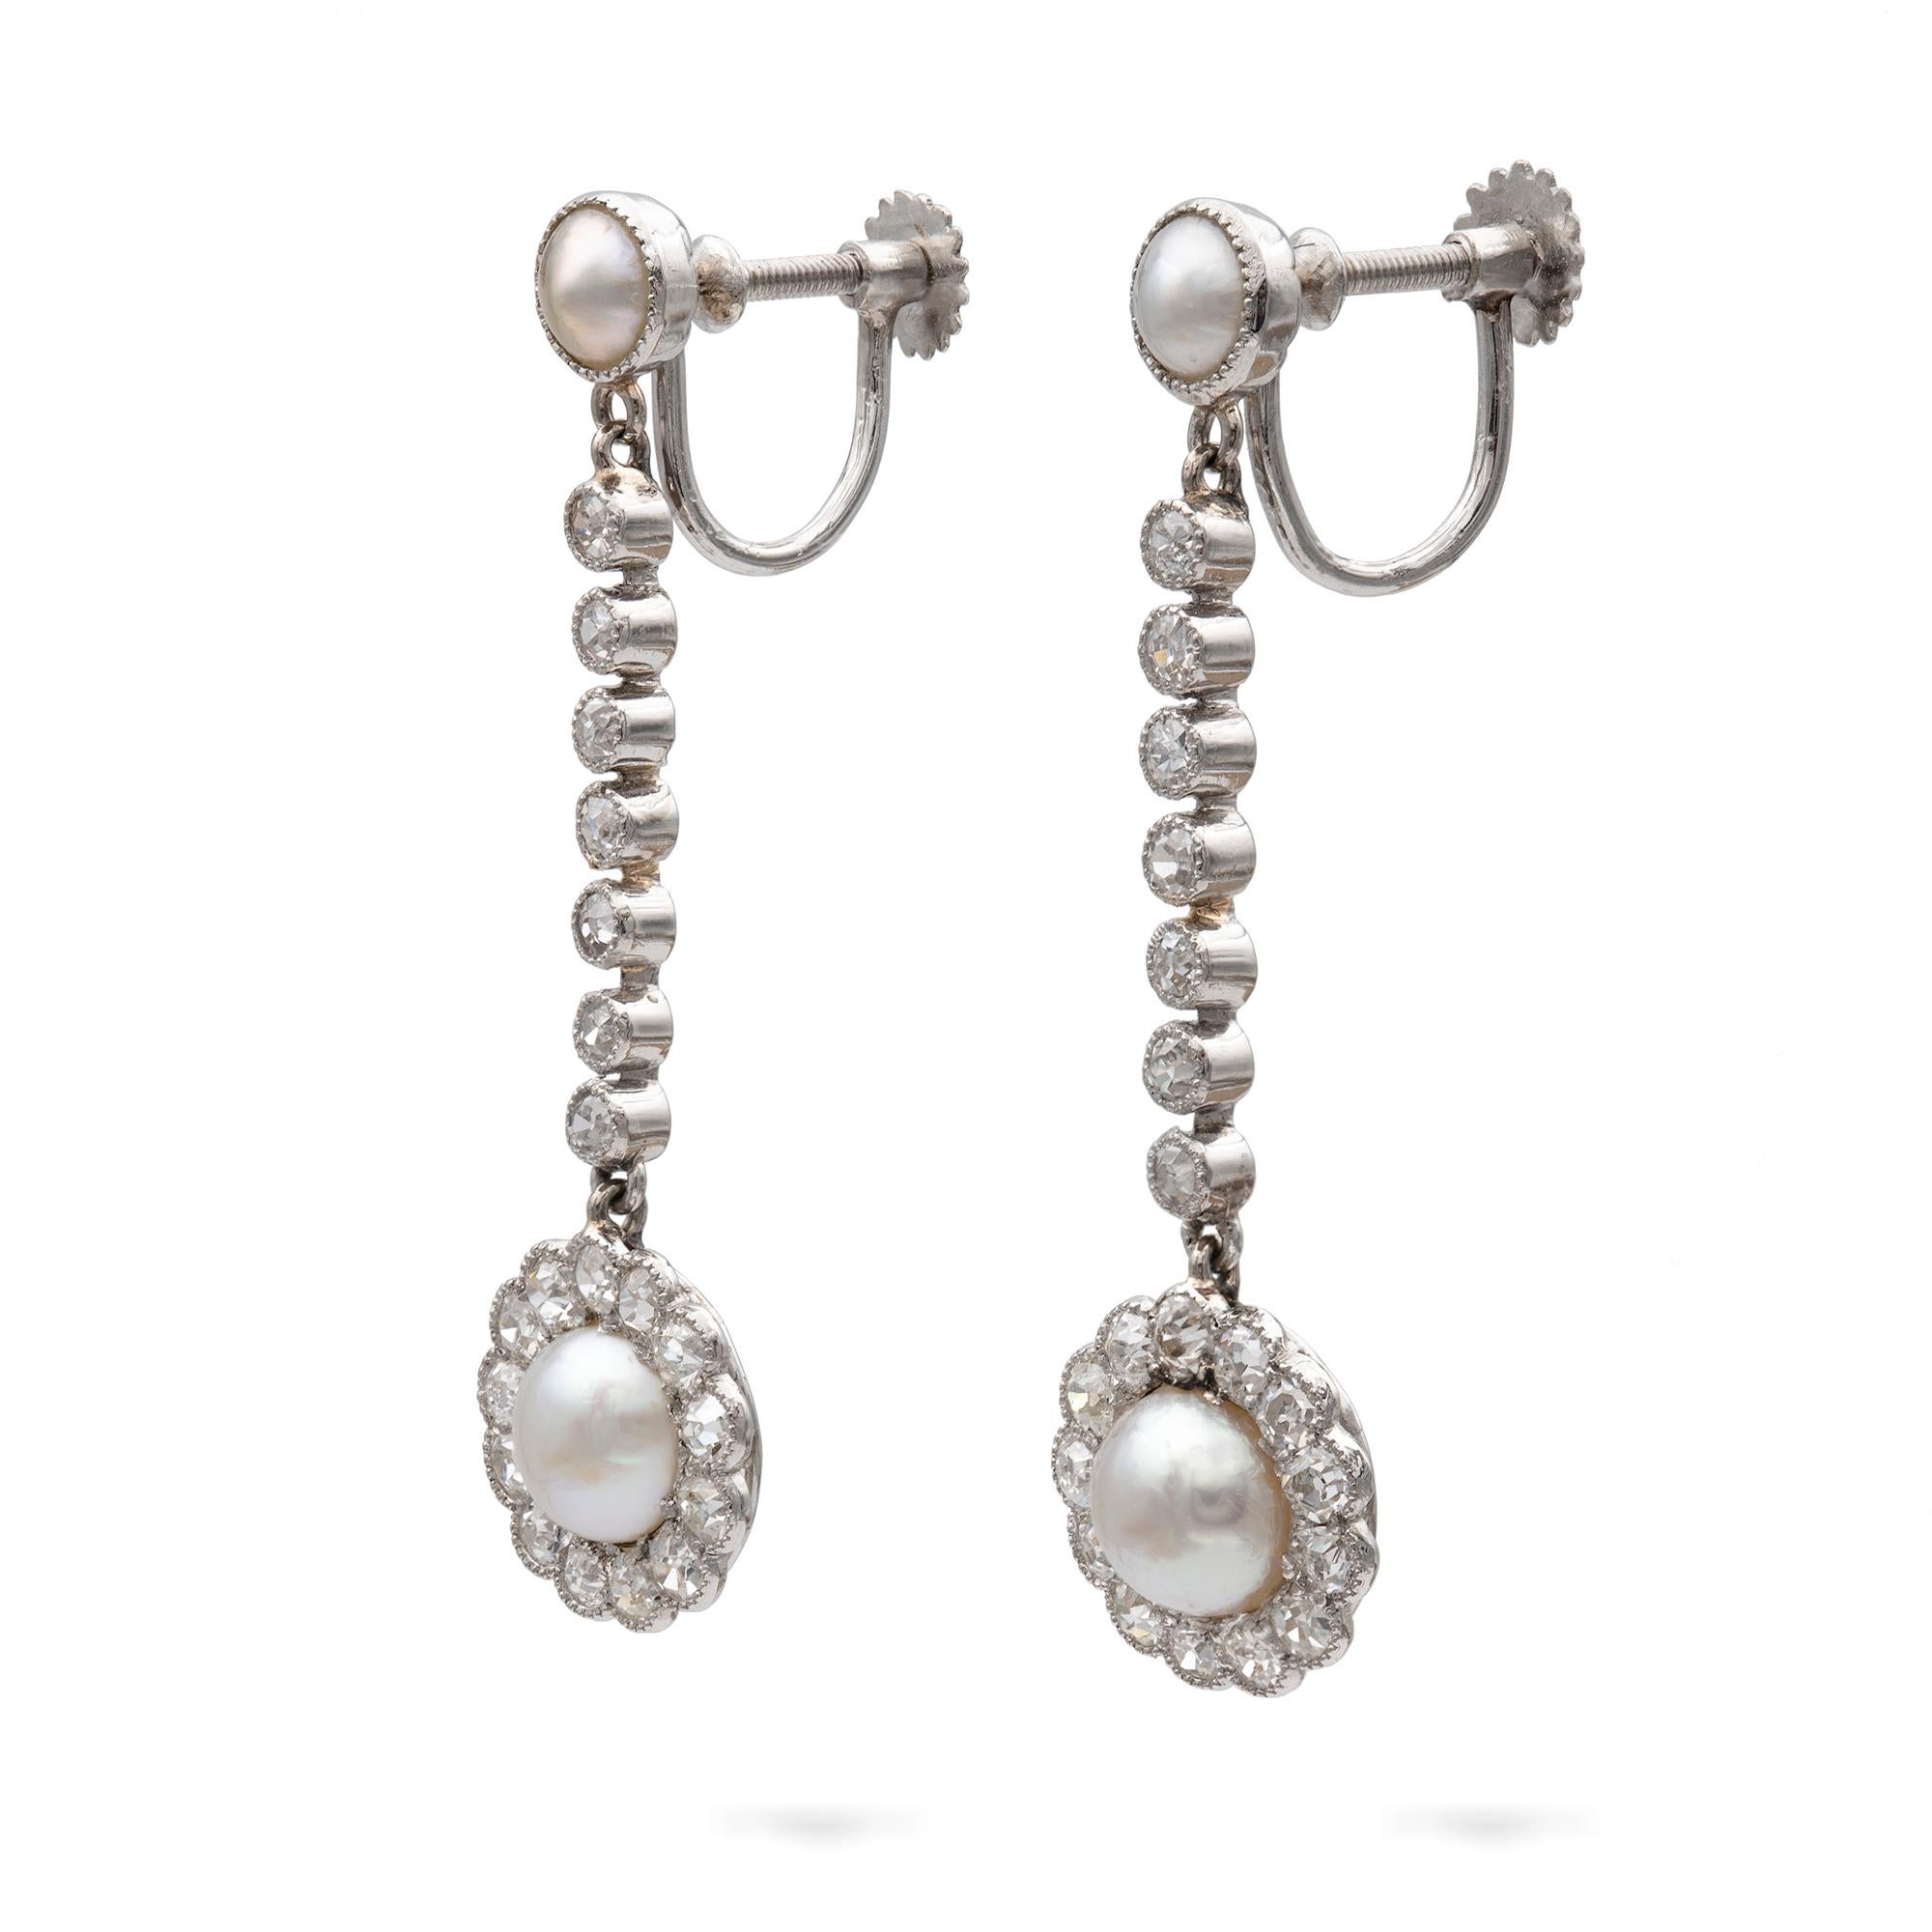 Ein Paar edwardianische Ohrringe aus Naturperlen und Diamanten, jeweils bestehend aus einer Naturperle, umgeben von dreizehn alten Diamanten im Brillantschliff, aufgehängt an einer Reihe von sieben Diamanten im Rosenschliff in einer